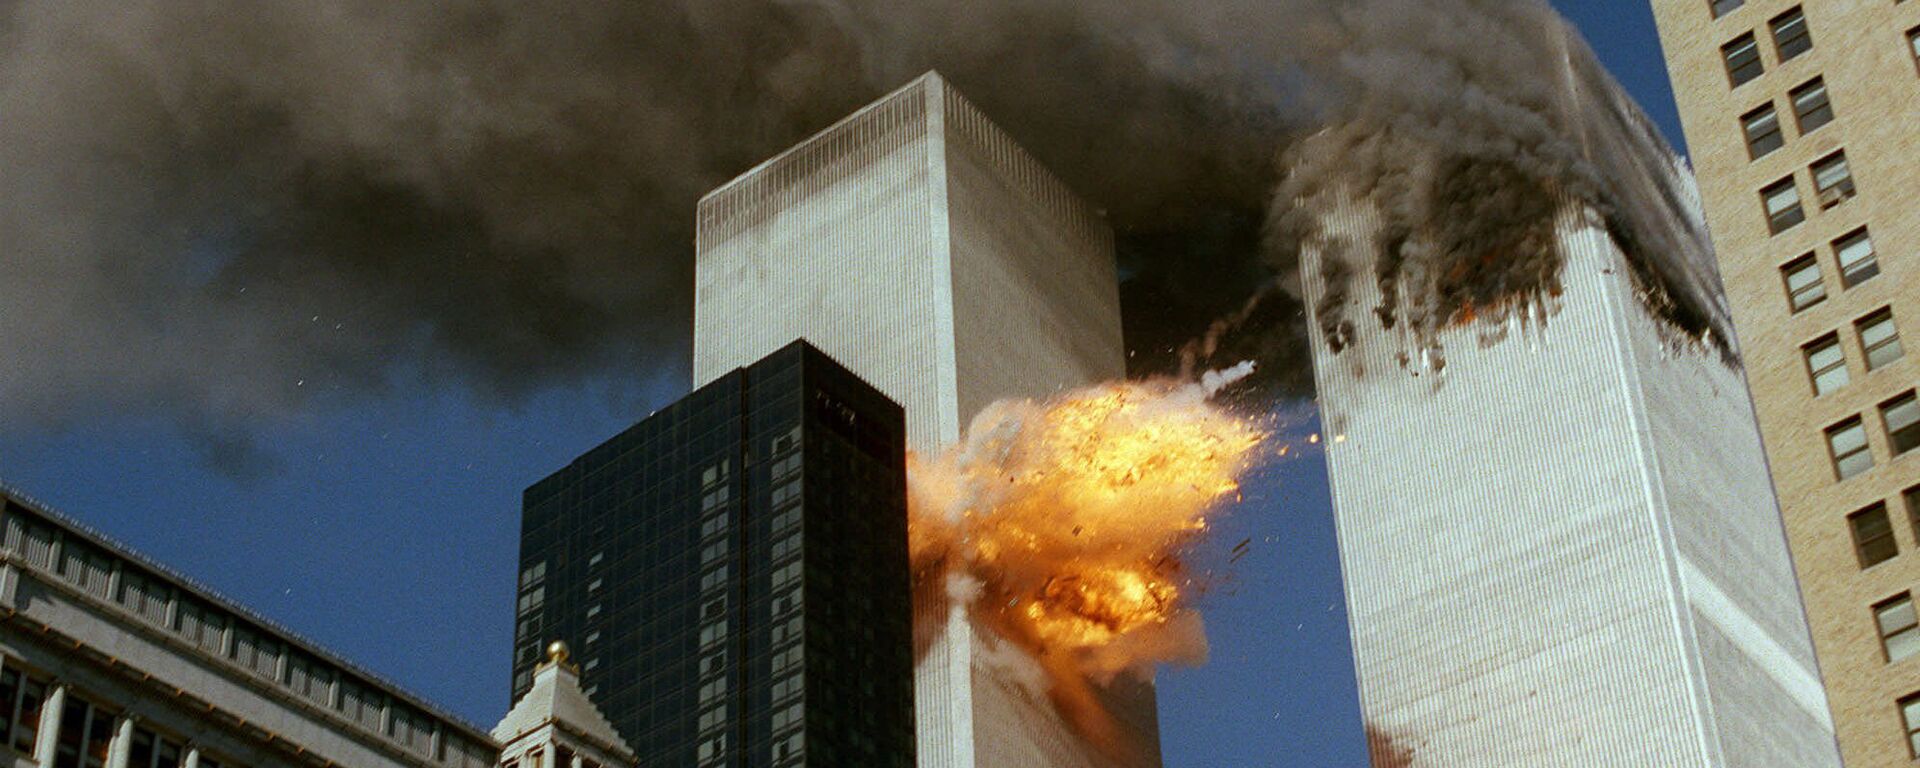 Momento del impacto del vuelo 175 contra la torre sur del World Trade Center, 11 de septiembre 2001 - Sputnik Mundo, 1920, 10.09.2021